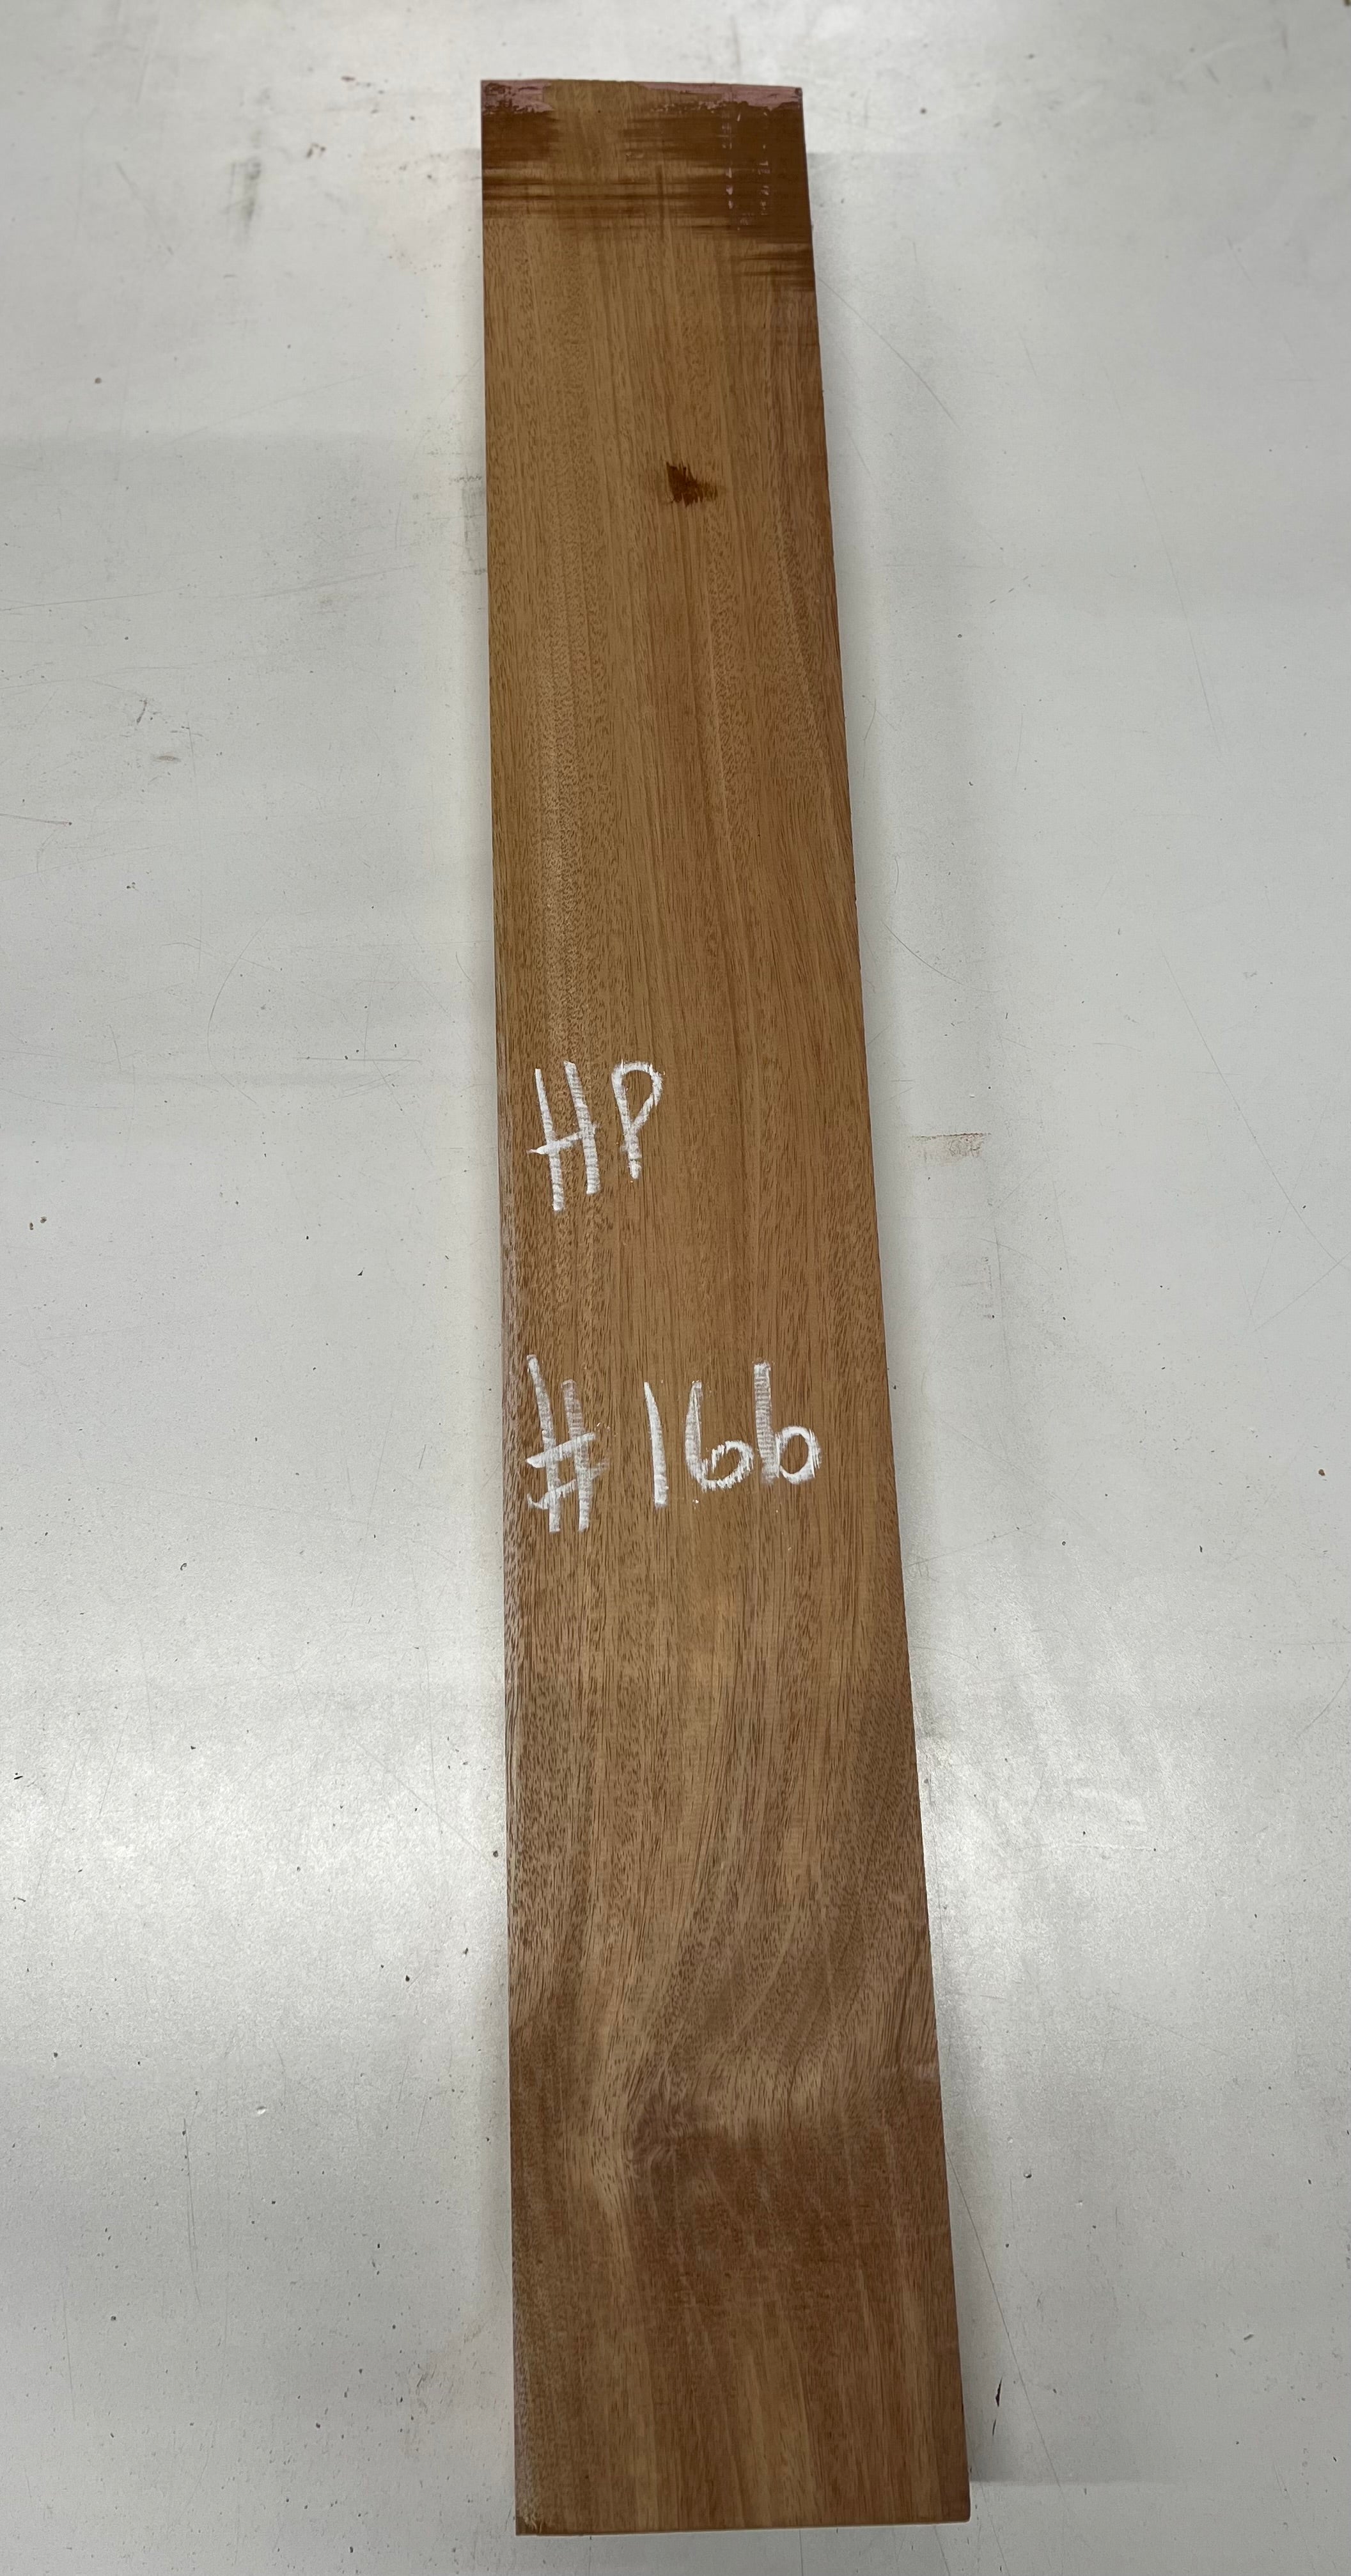 Honduran Mahogany Lumber Board Wood Blank 37&quot;x5-5/8&quot;x2&quot; 